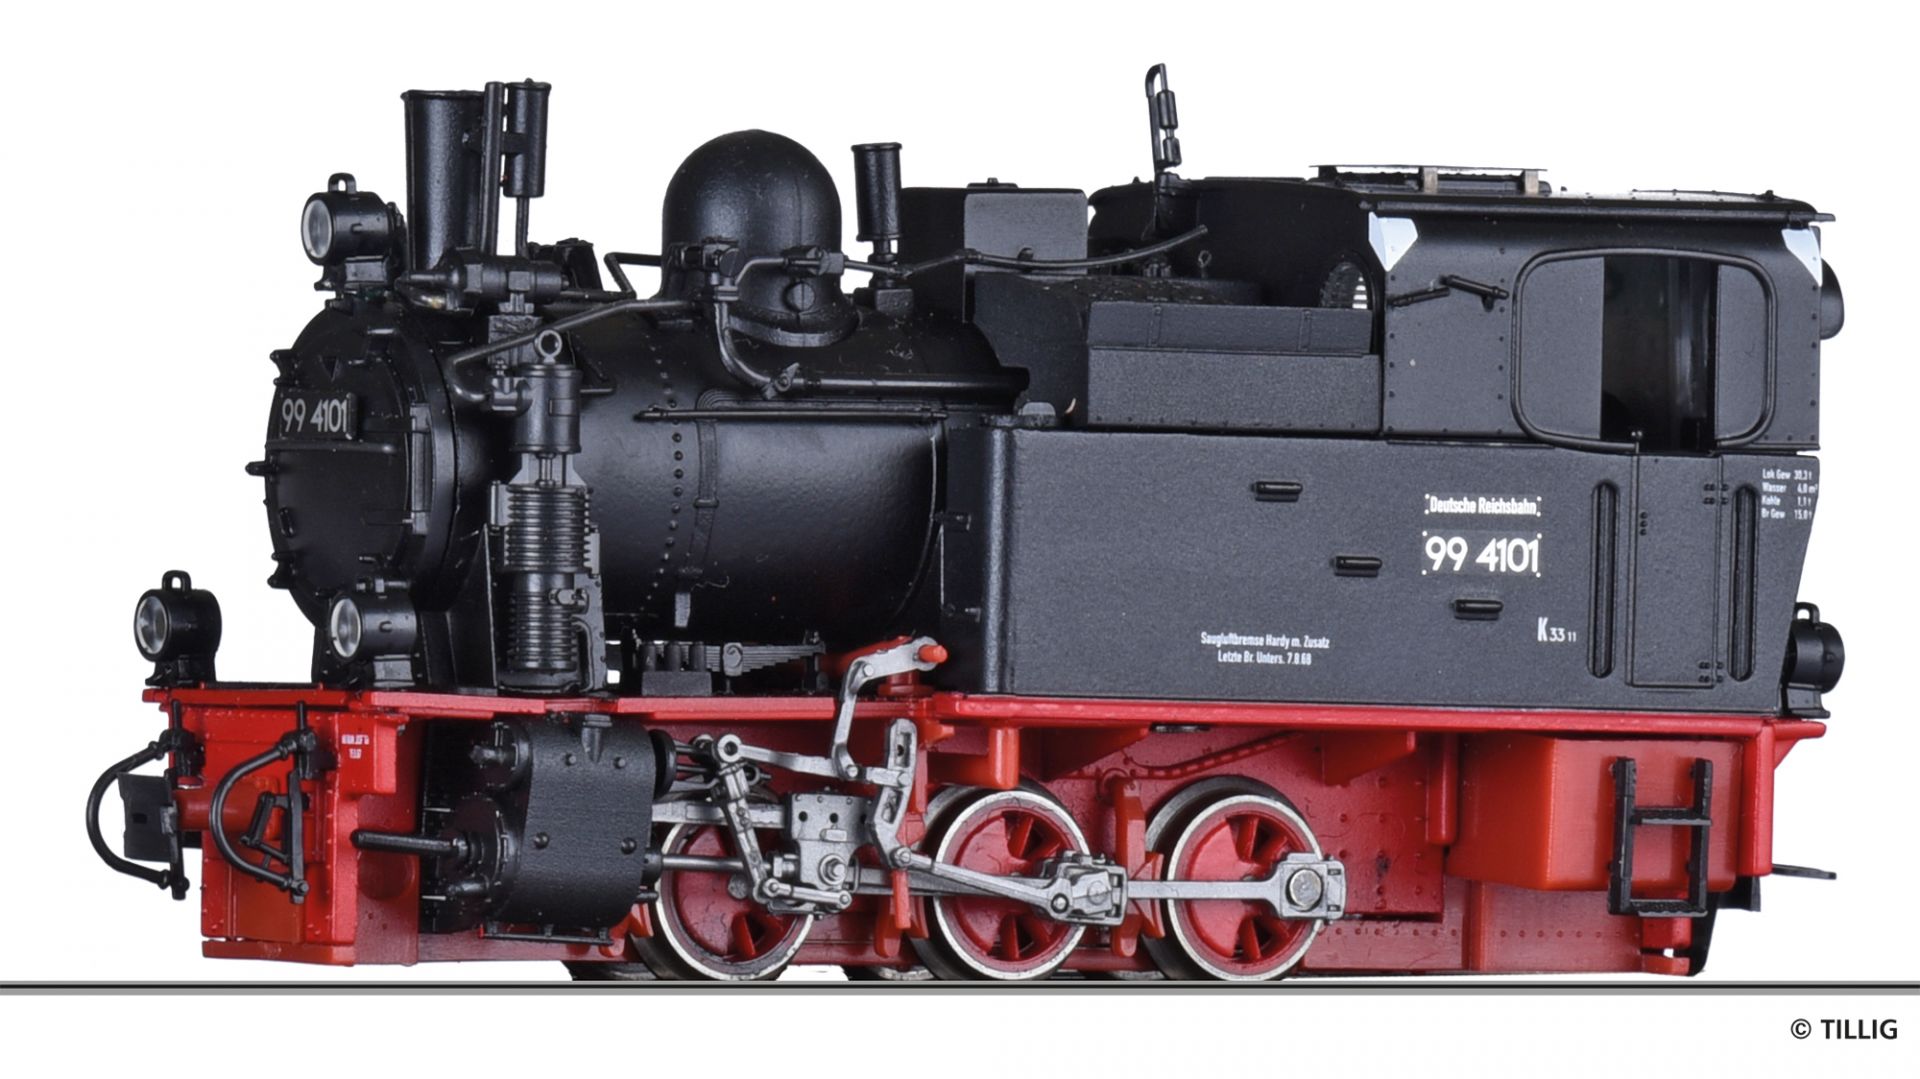 02971 | Dampflokomotive DR -werksseitig ausverkauft-